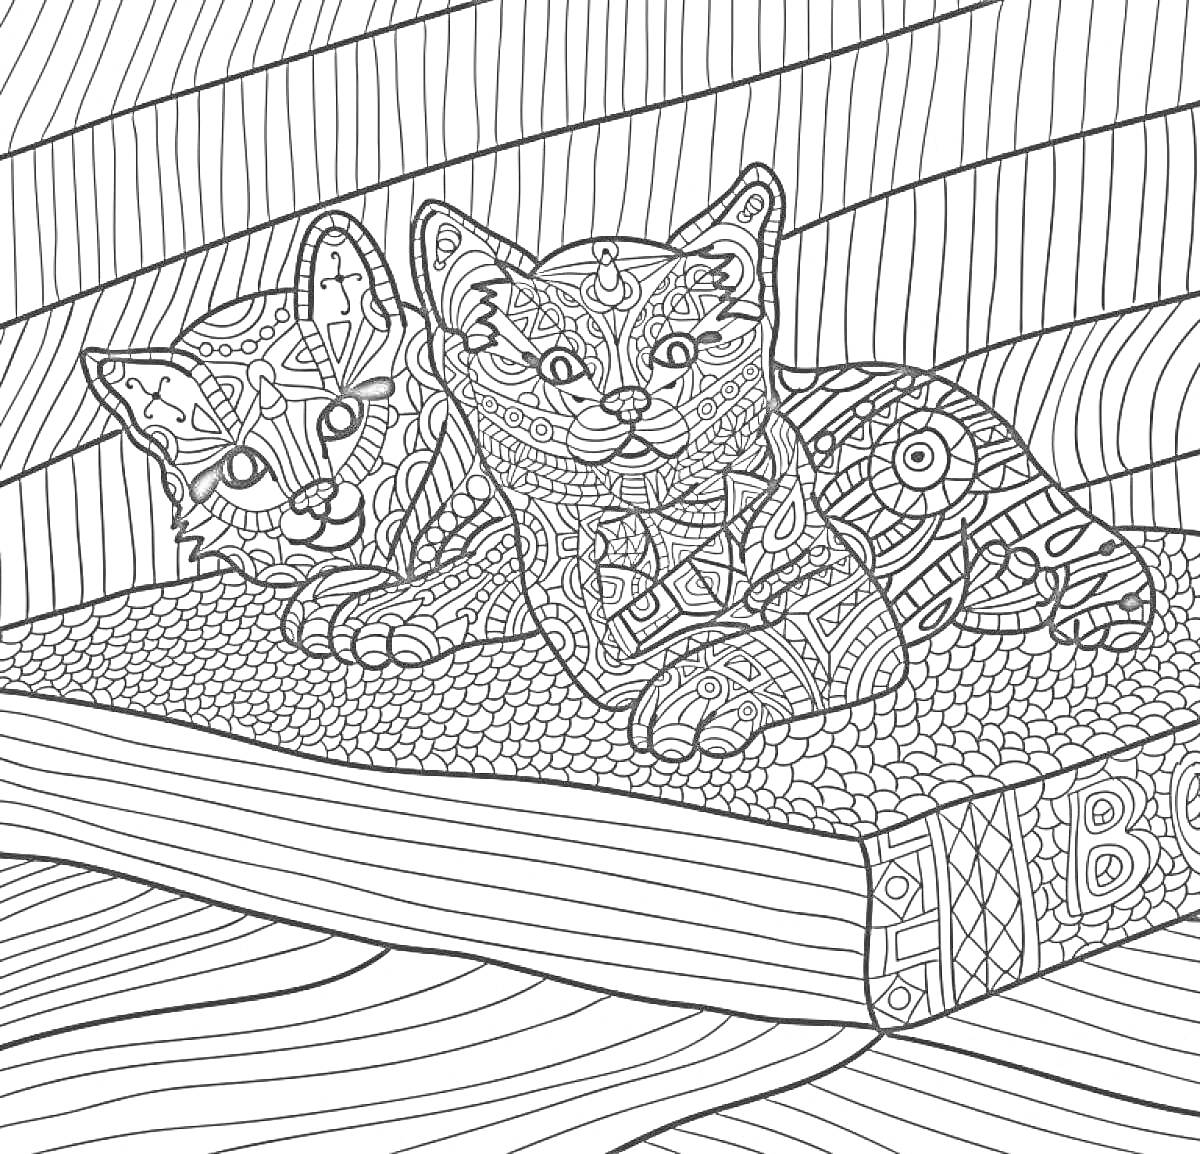 Два кота лежат на коврике перед стулом